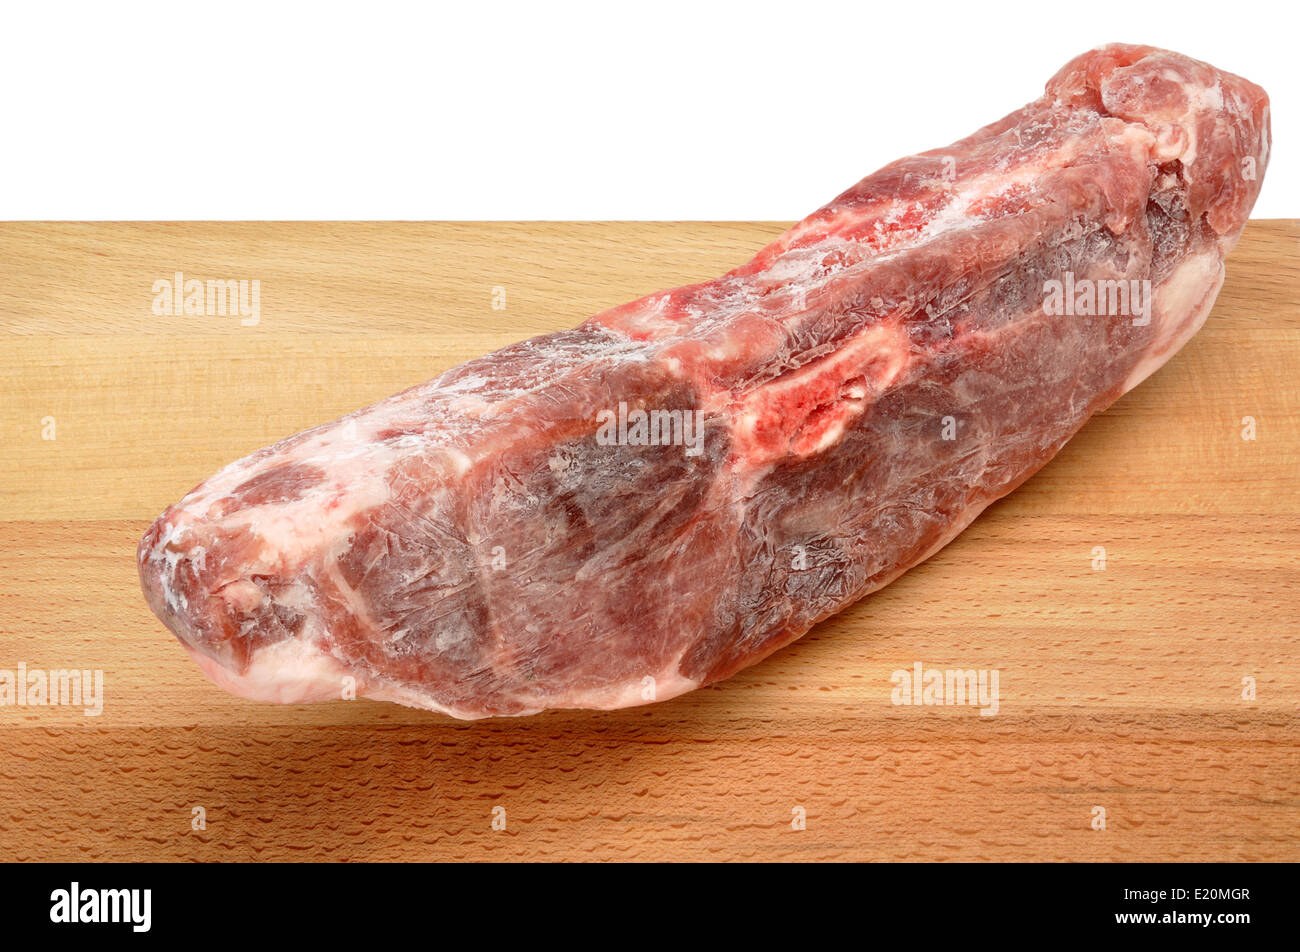 Carne congelata immagini e fotografie stock ad alta risoluzione - Alamy